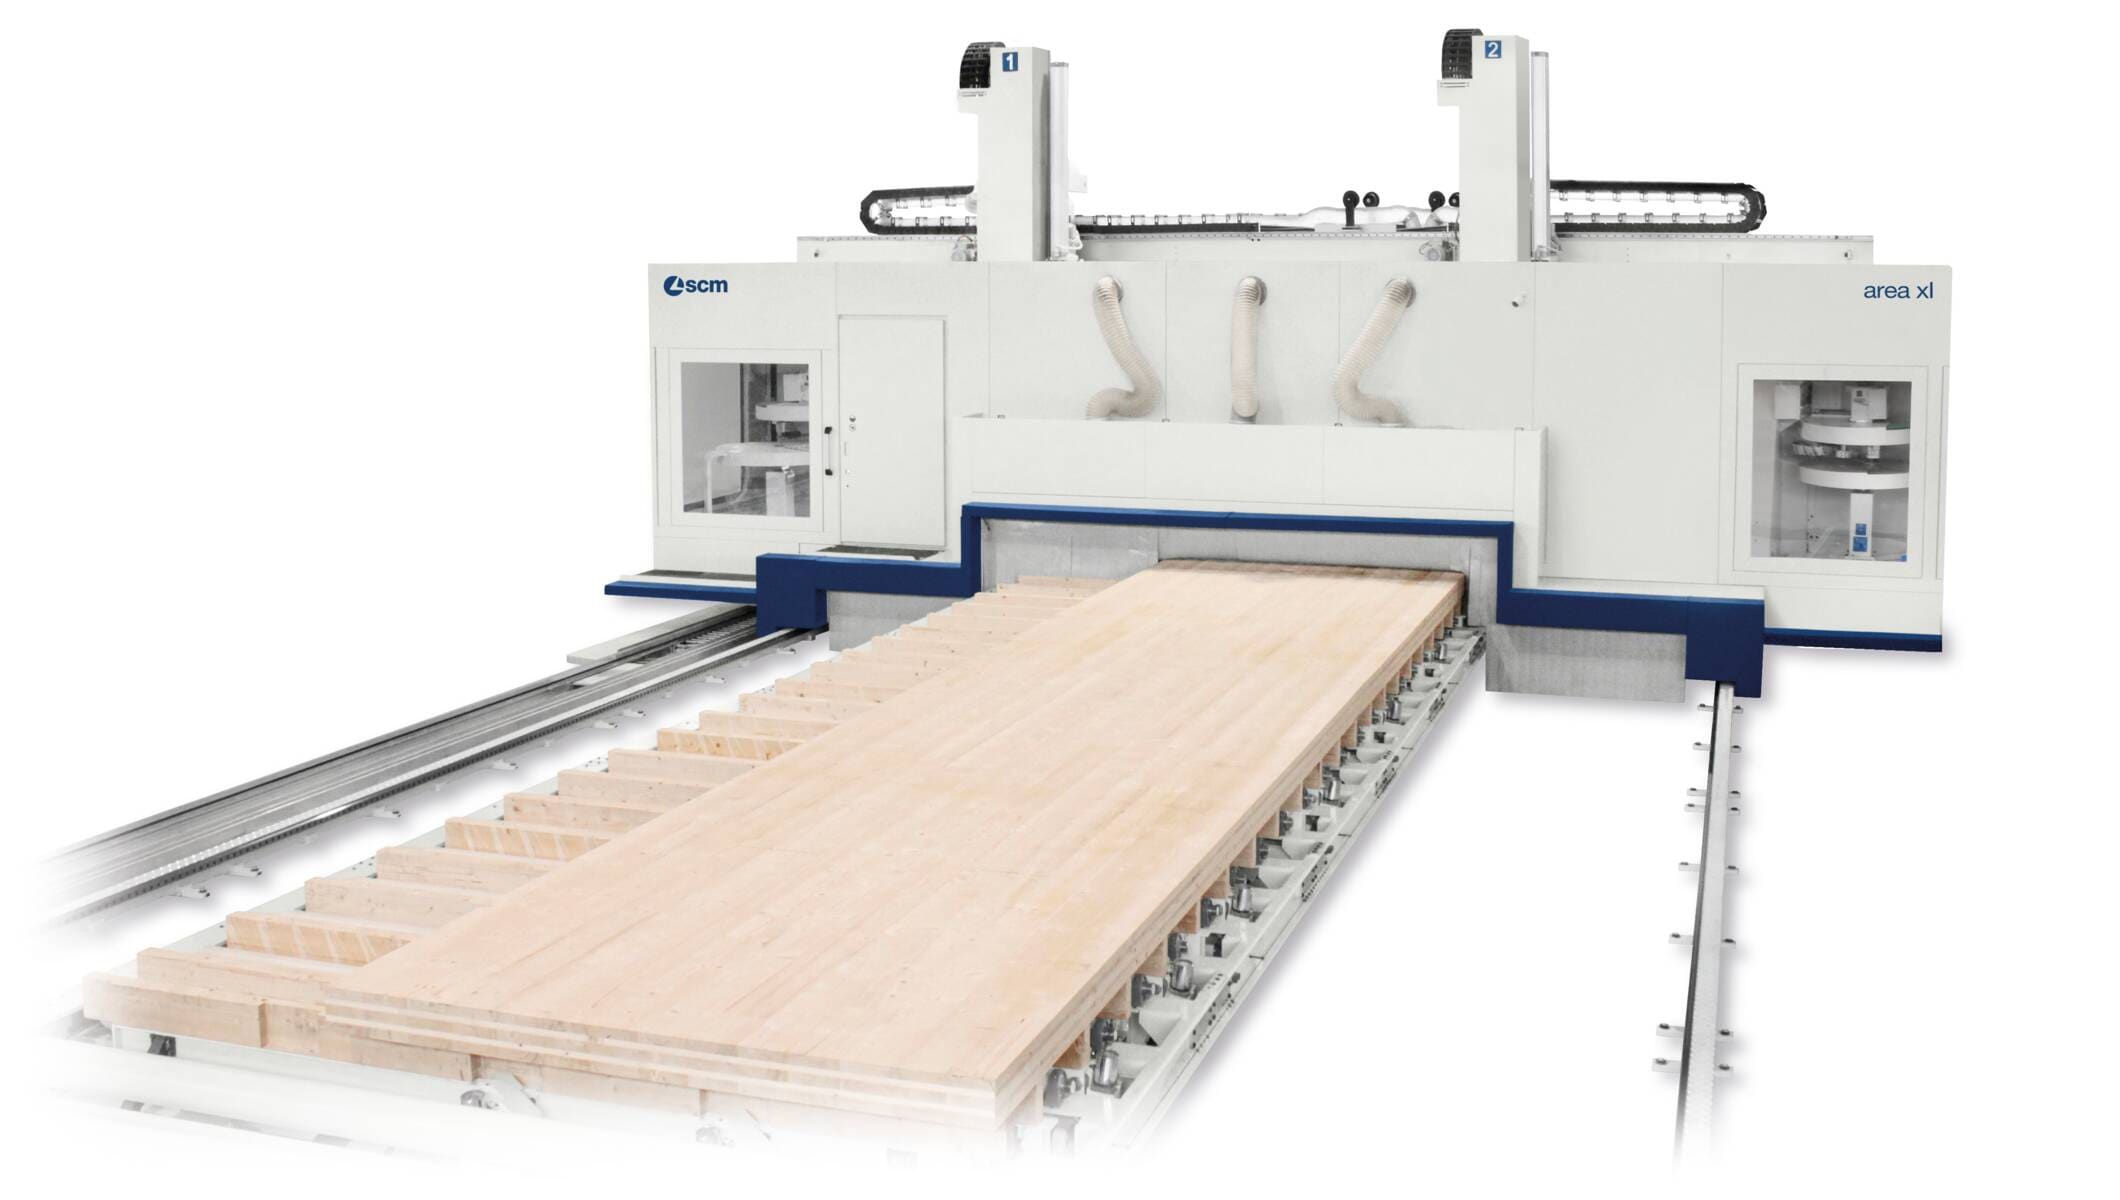 Sistemi per l'edilizia in legno - CNC - Centri di Lavoro per l'edilizia in legno - area xl